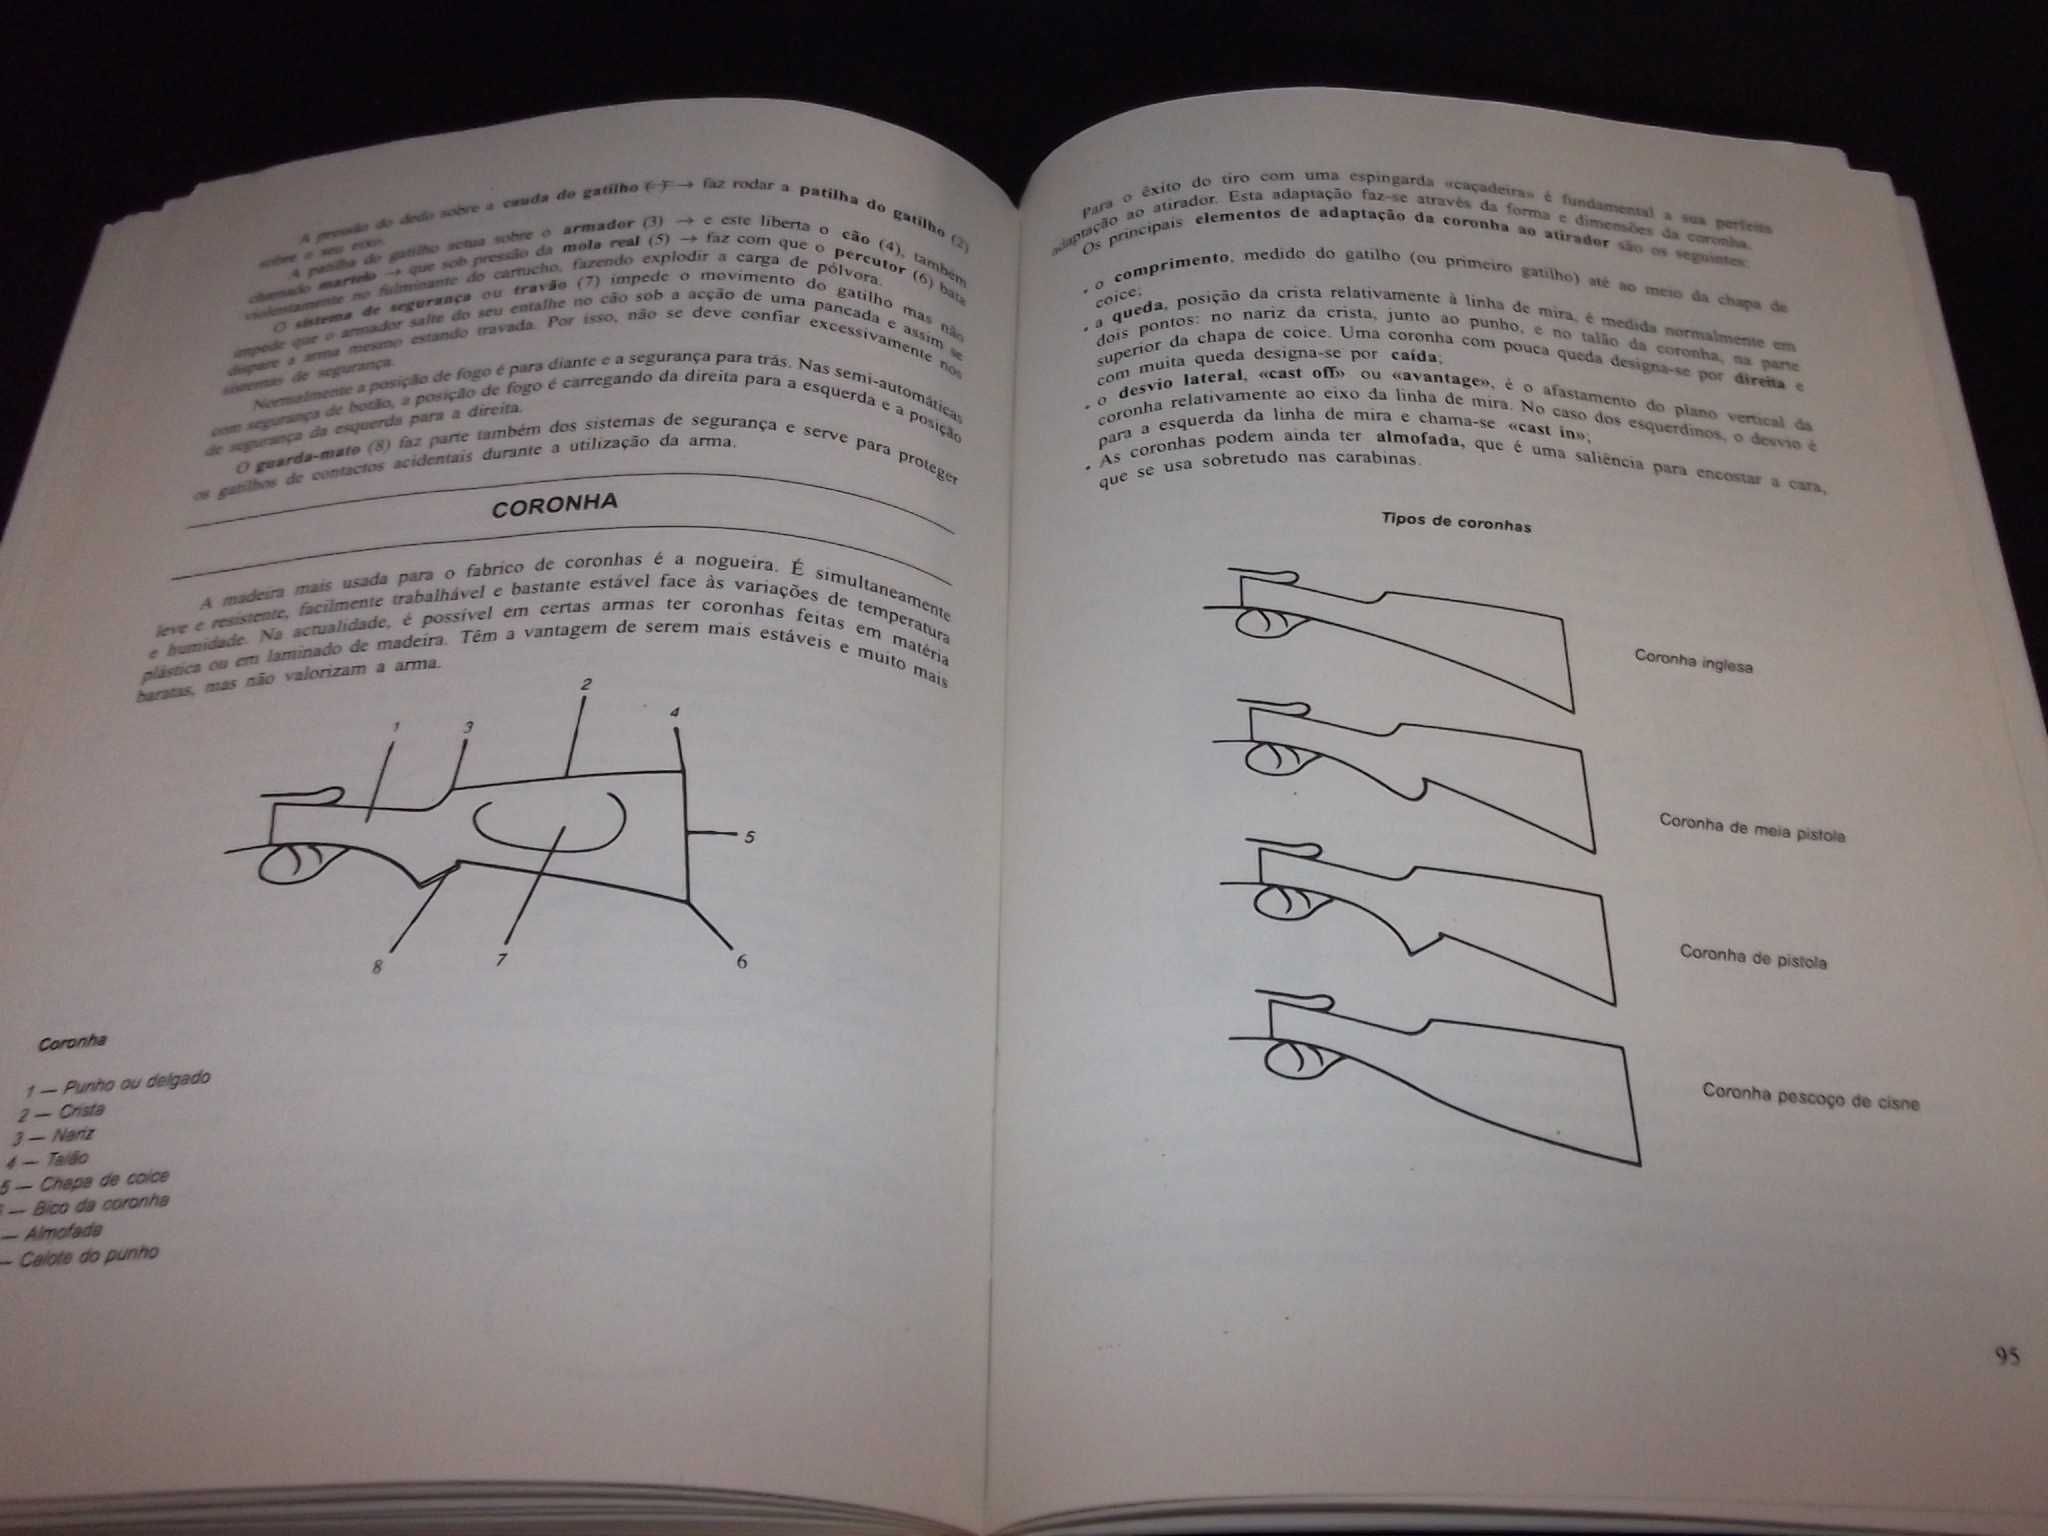 Livro Manual para Exame Carta de Caçador 1995 + brochuras